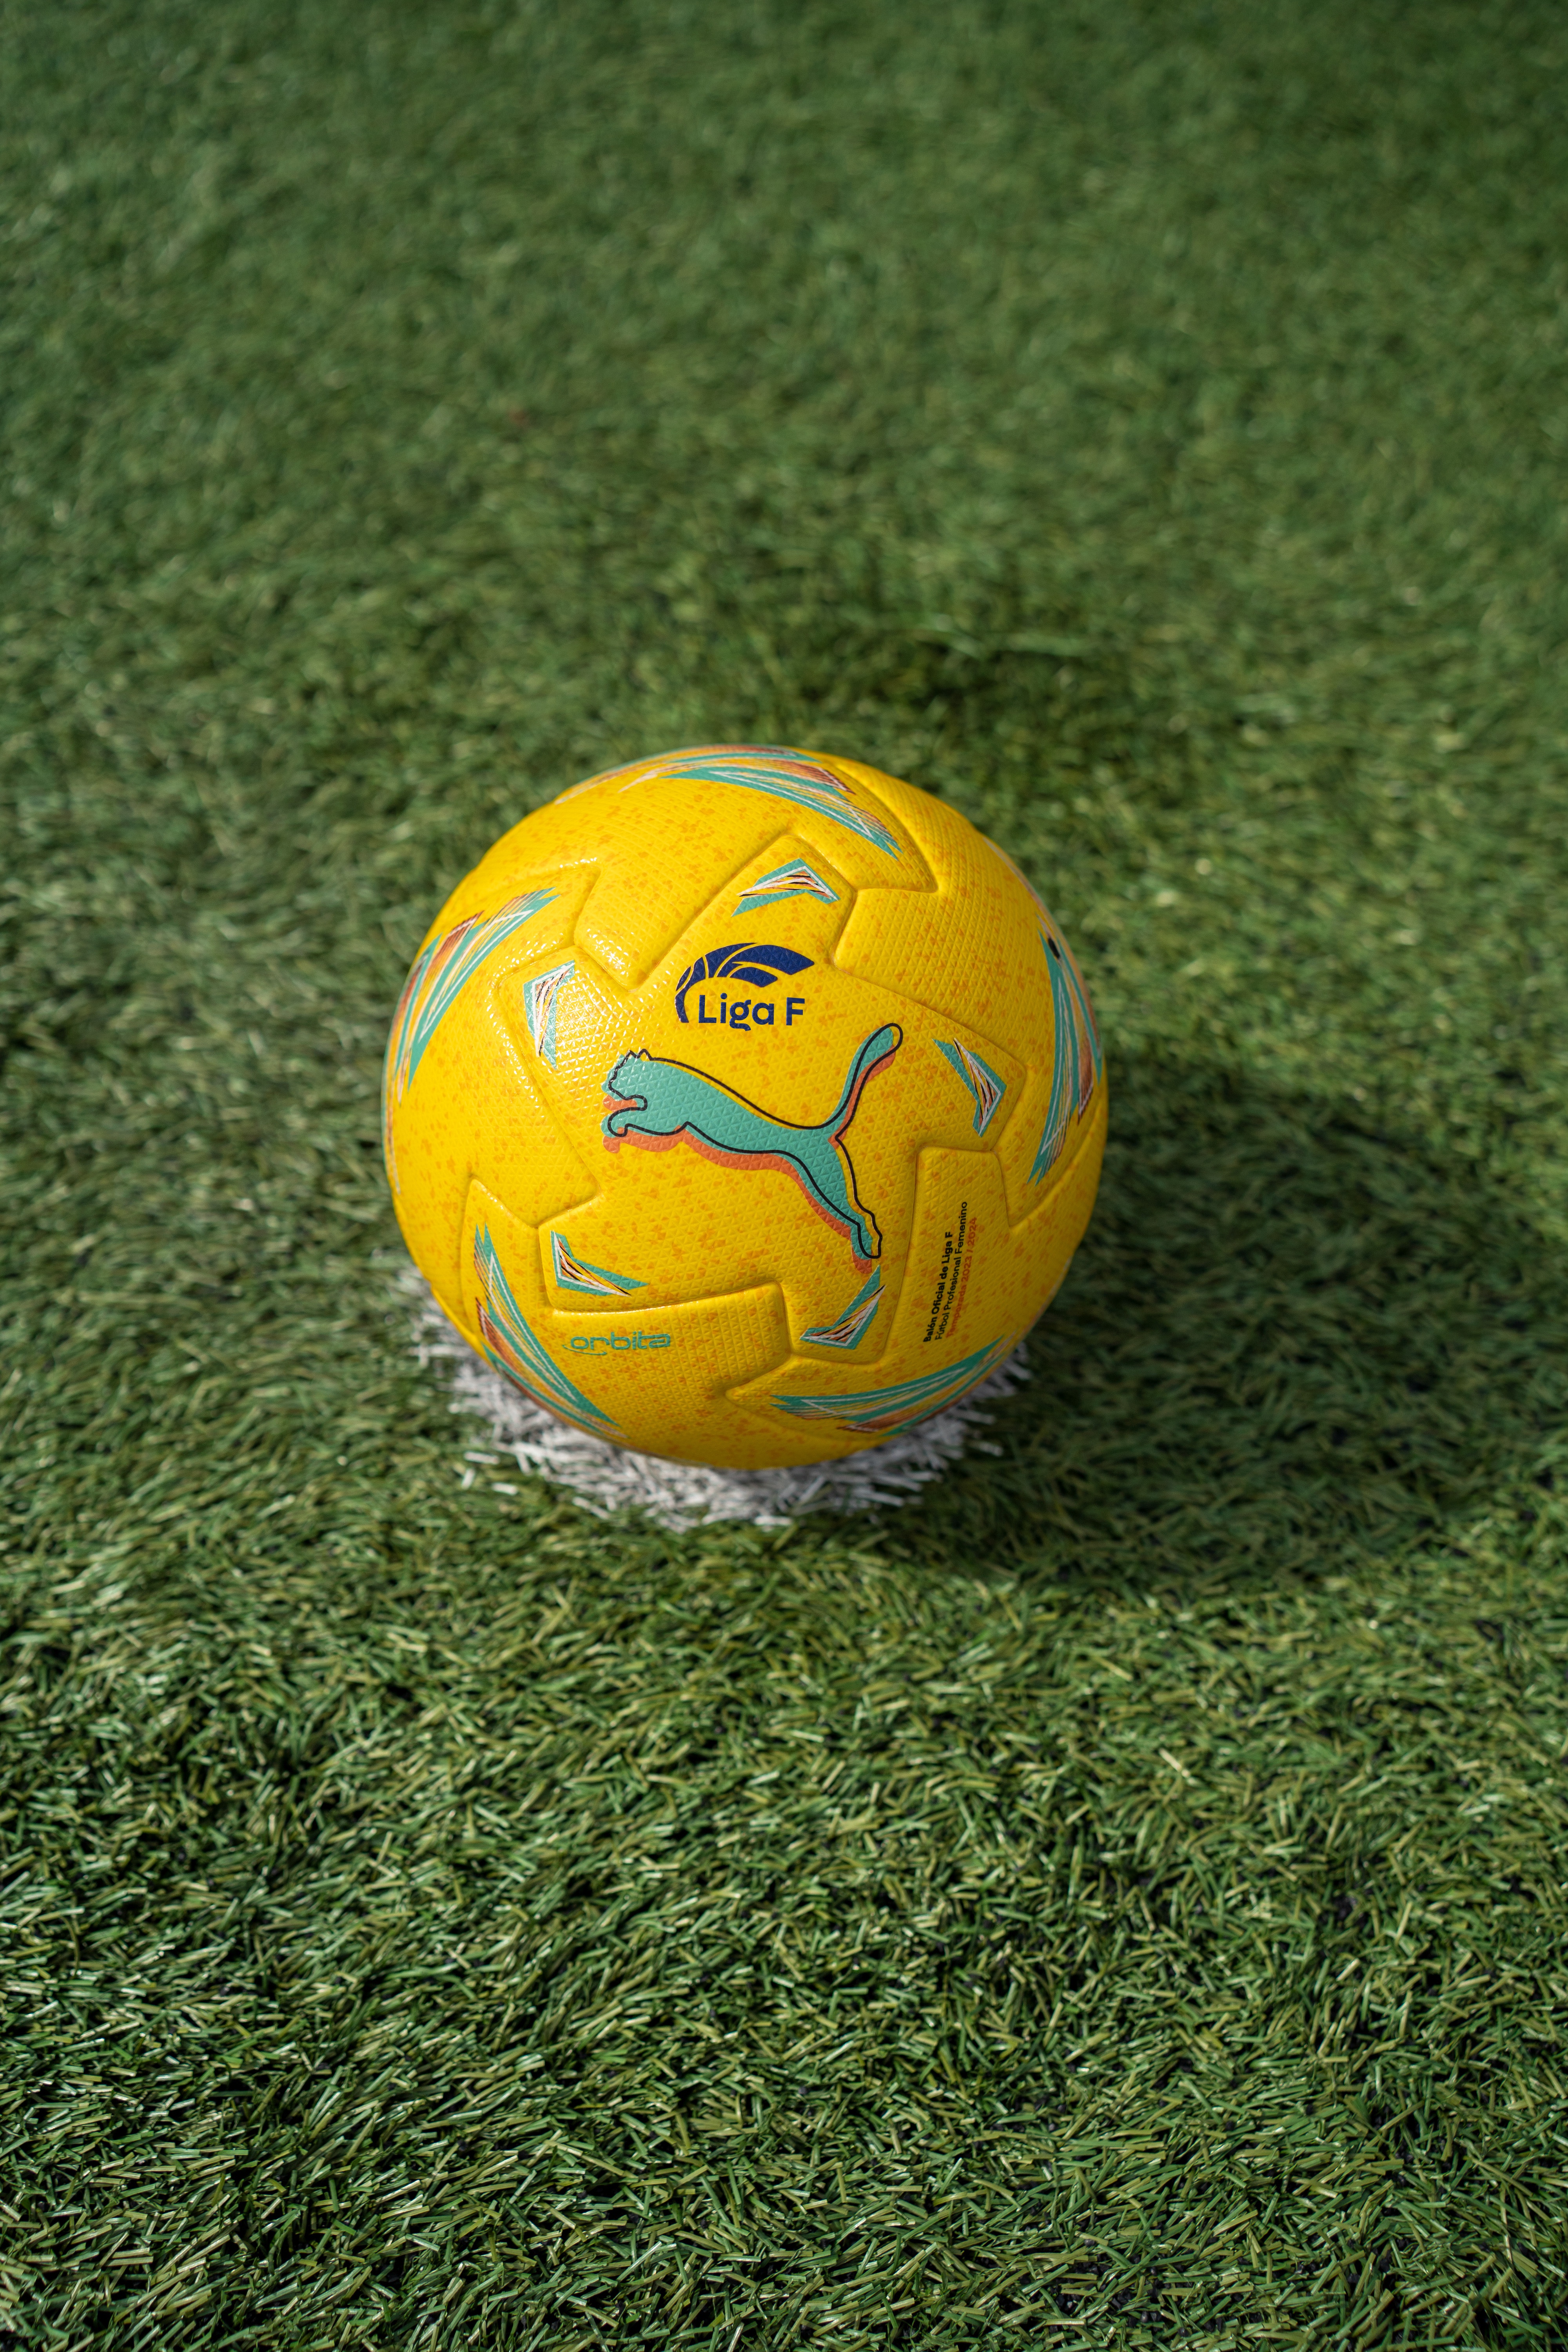 Oficial: Los clubes de Liga F regalarán por Reyes el balón PUMA